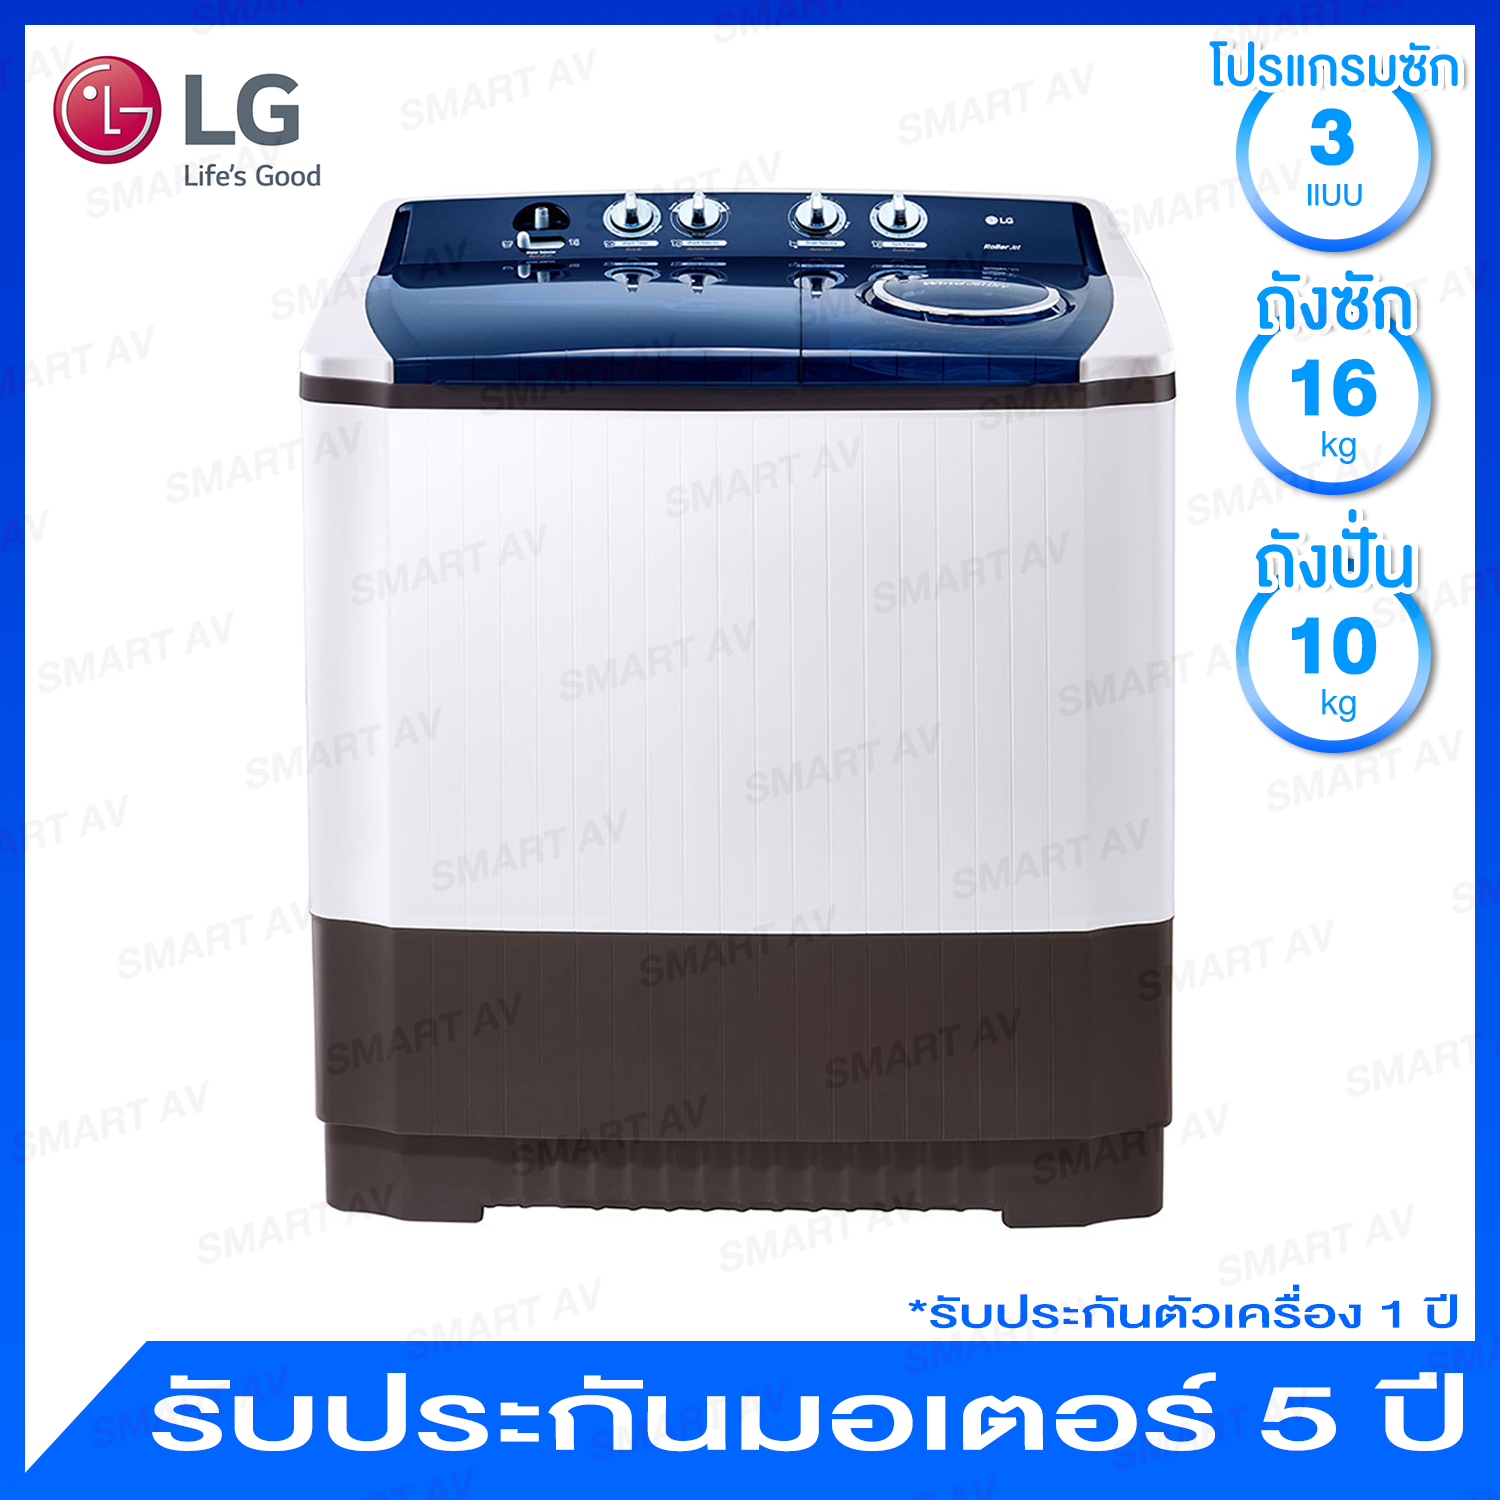 LG เครื่องซักผ้าฝาบนแบบ 2 ถัง ความจุ 16 กก. รุ่น TT16WAPG พร้อมระบบ ROLLER JET